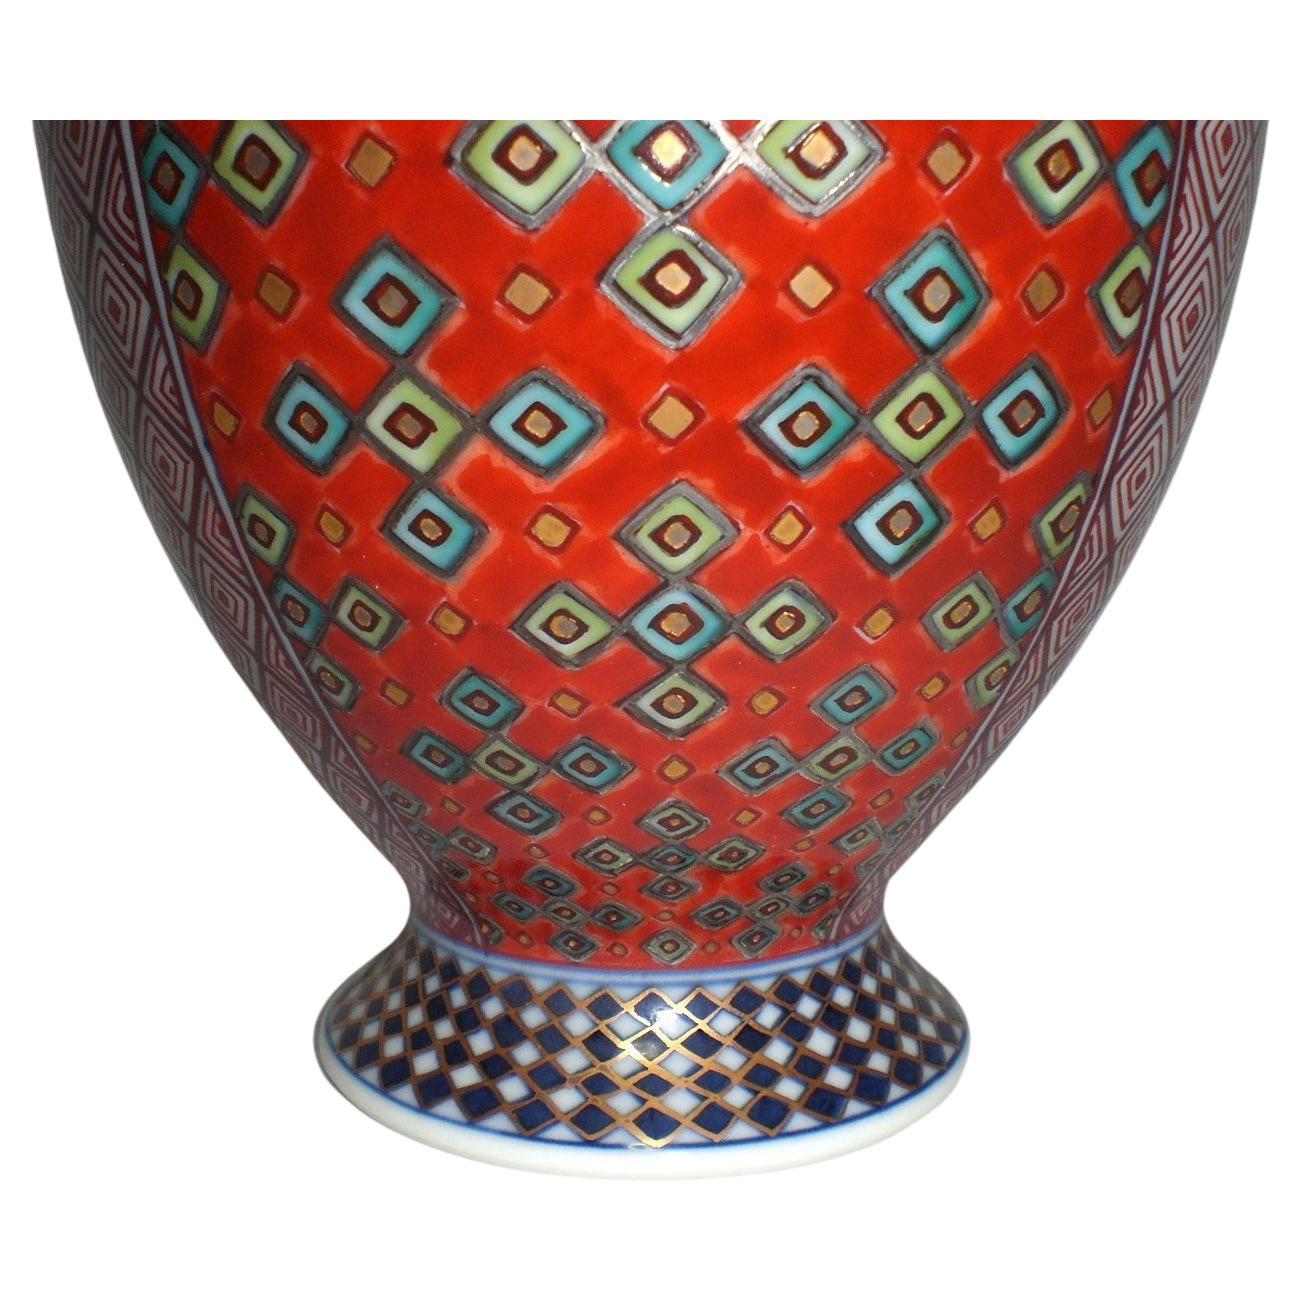 Exquisite zeitgenössische dekorative japanische Porzellanvase in einer außergewöhnlichen Form mit zwei faszinierenden und detaillierten geometrischen Fortschrittsmustern, die extrem aufwändig von Hand in Rot und Blau gemalt wurden. Ein signiertes